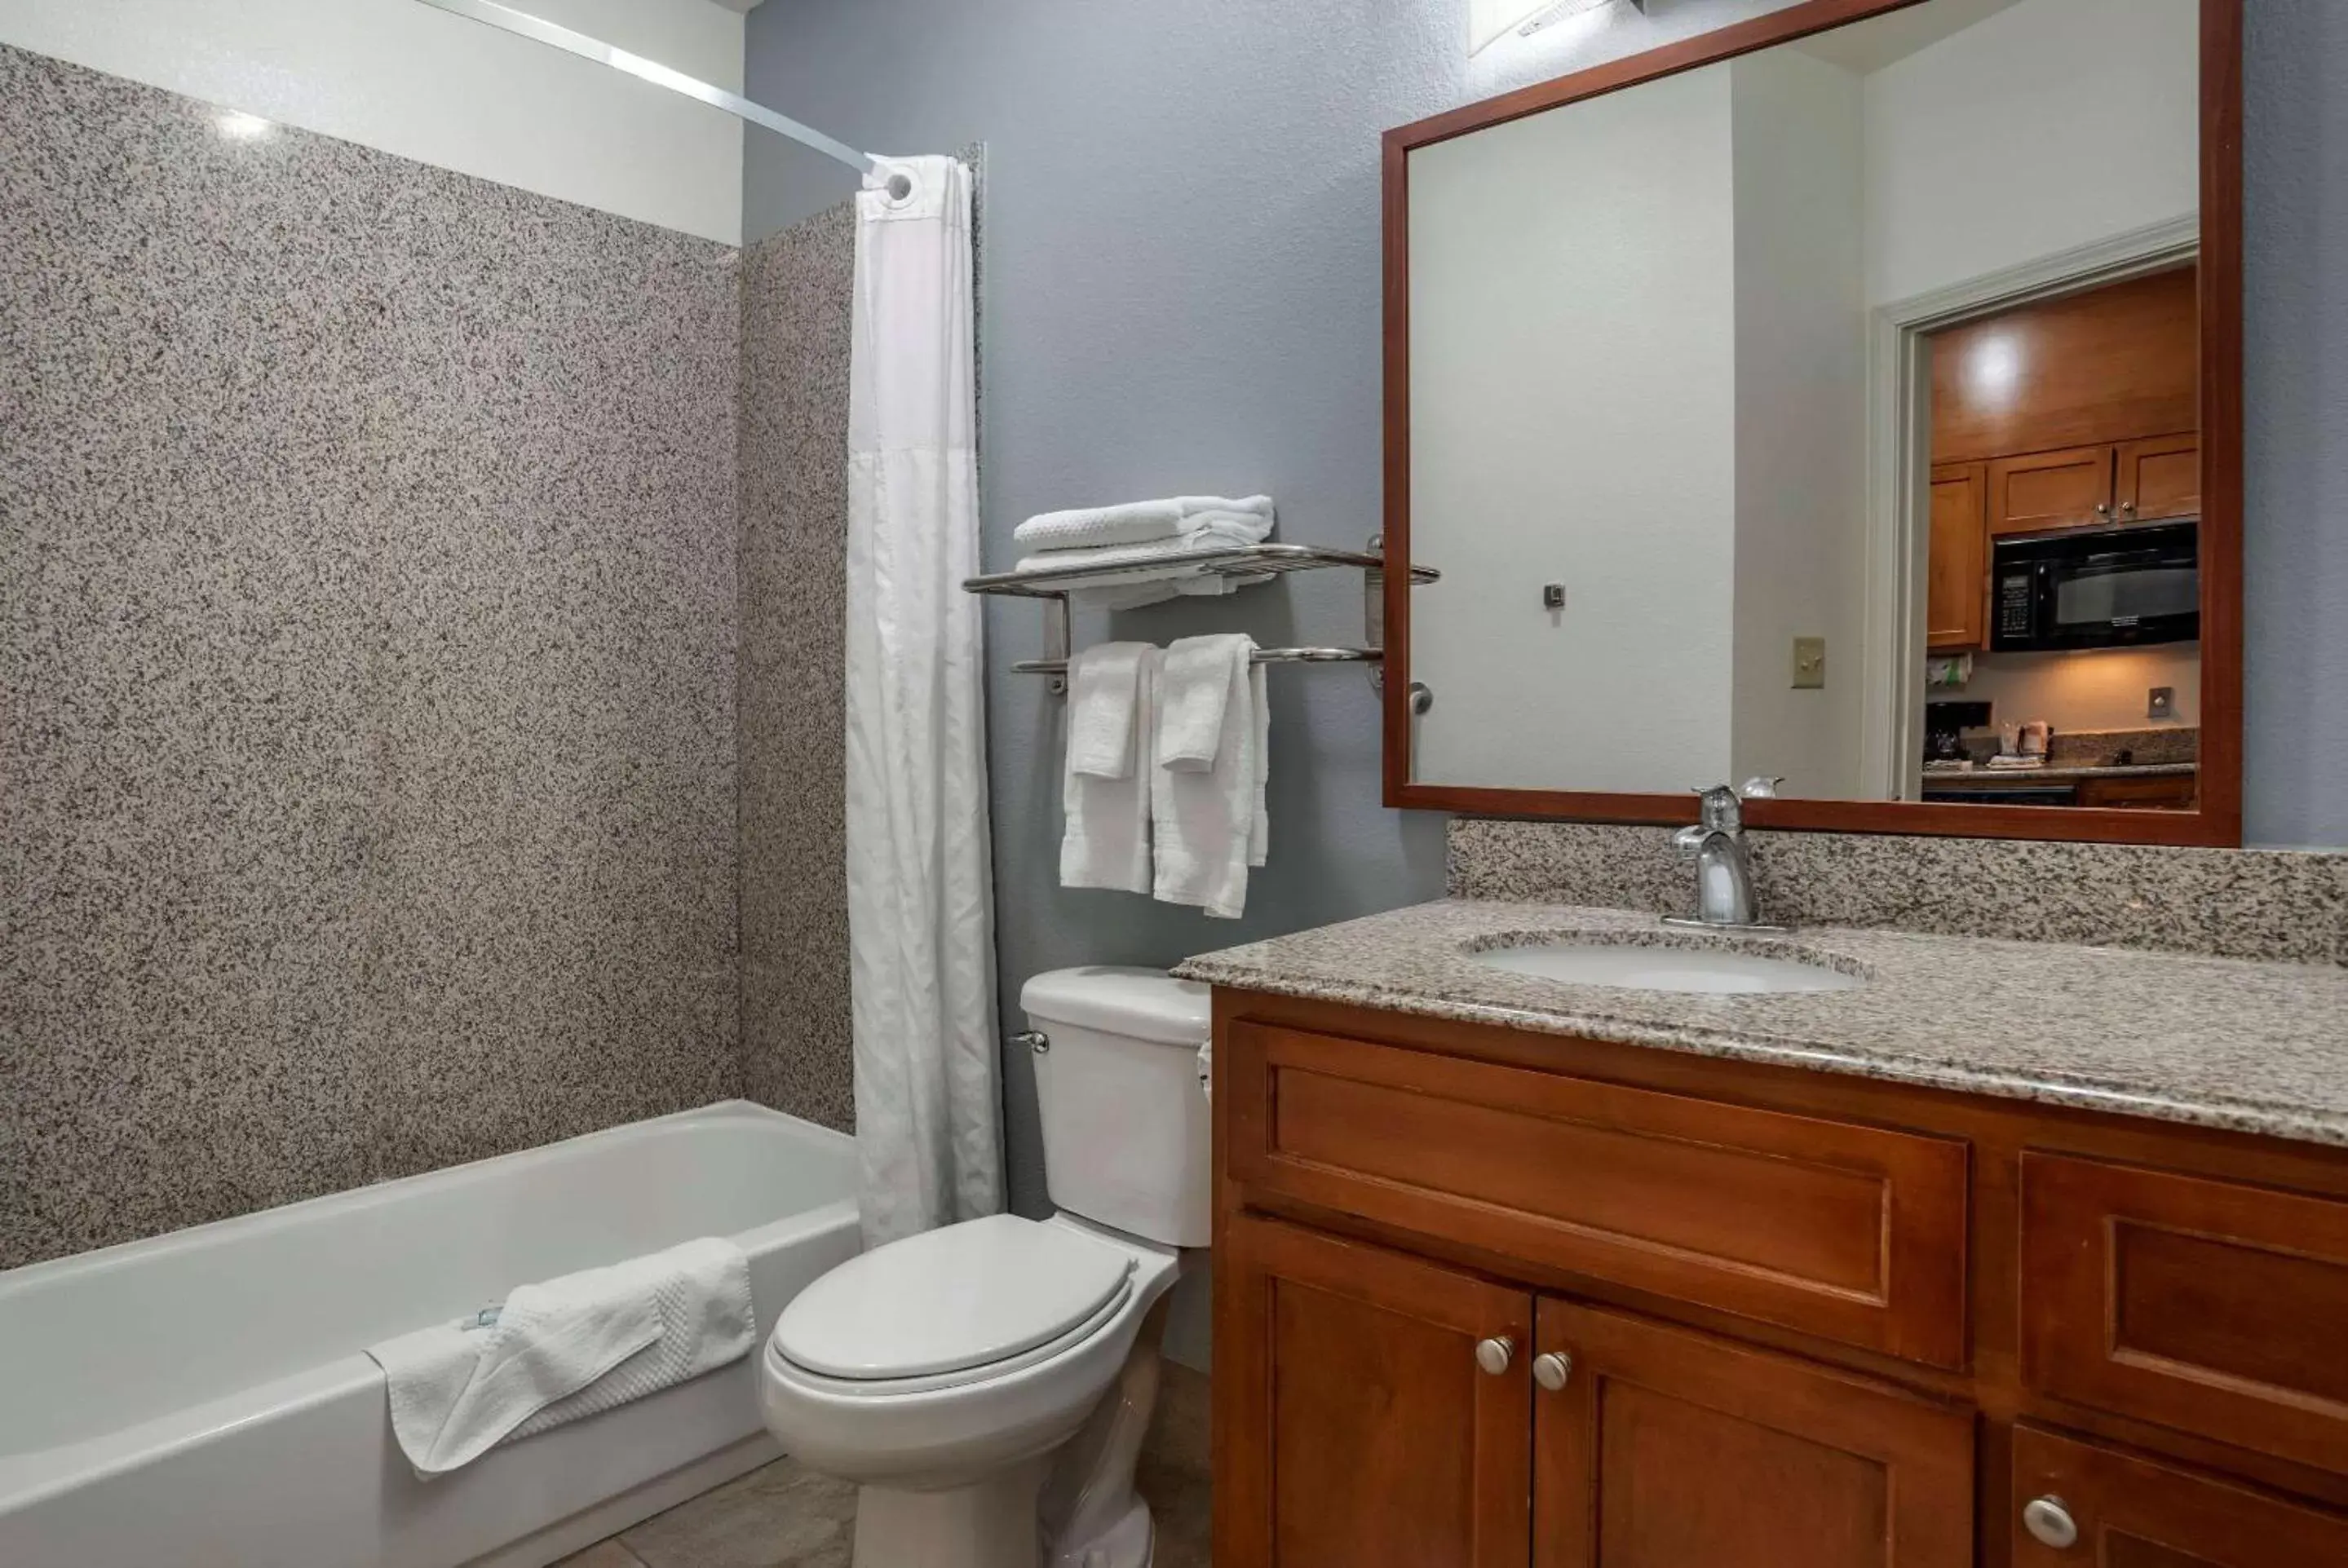 Bedroom, Bathroom in MainStay Suites Denham Springs - Baton Rouge East